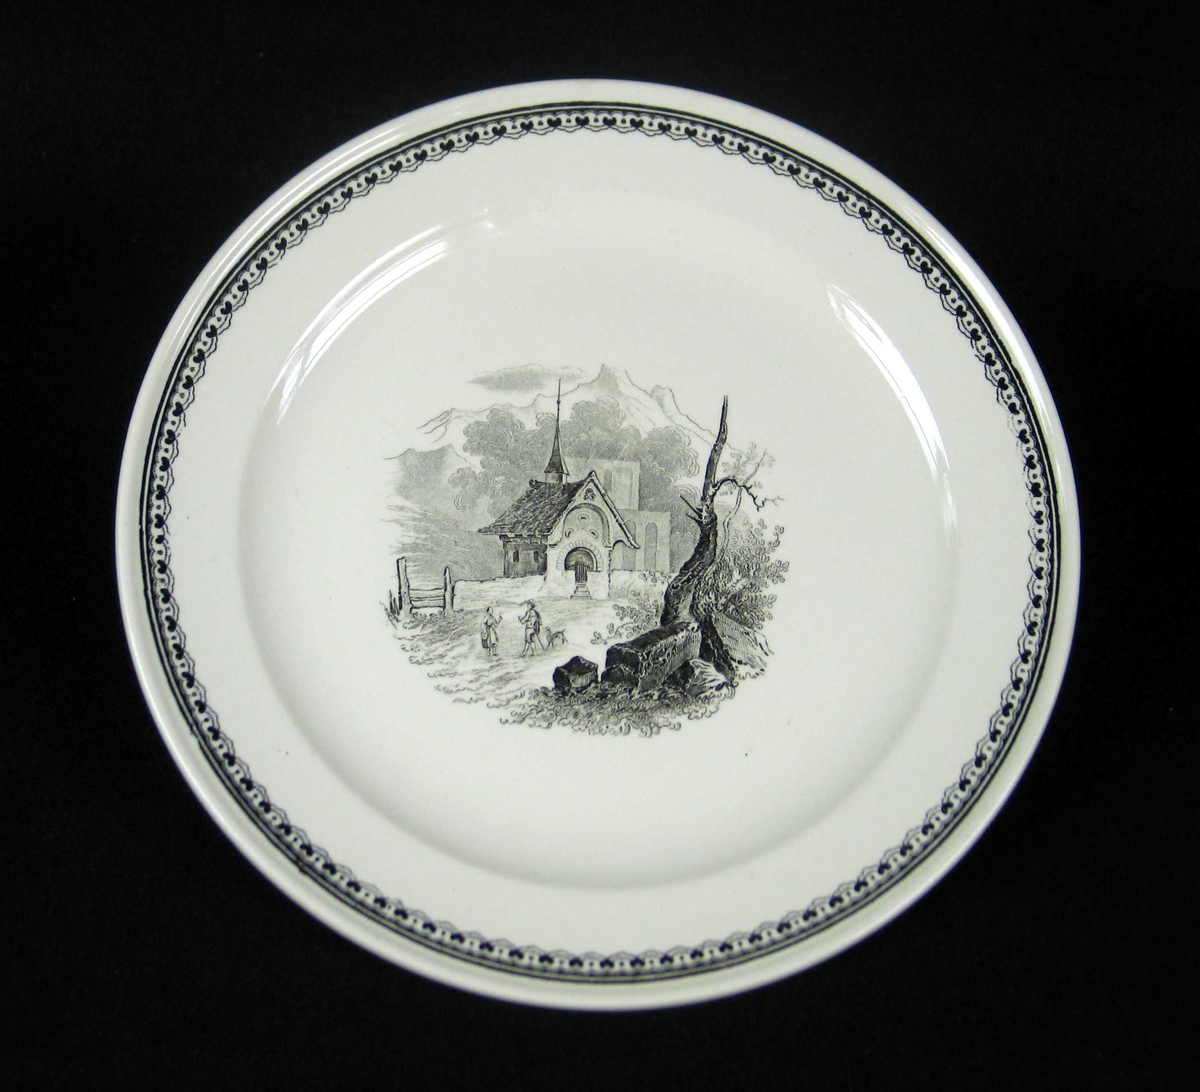 Servise i offwhite keramikk med sort dekor. Serviset består av 7 middagstallerkener og 8 asjetter.